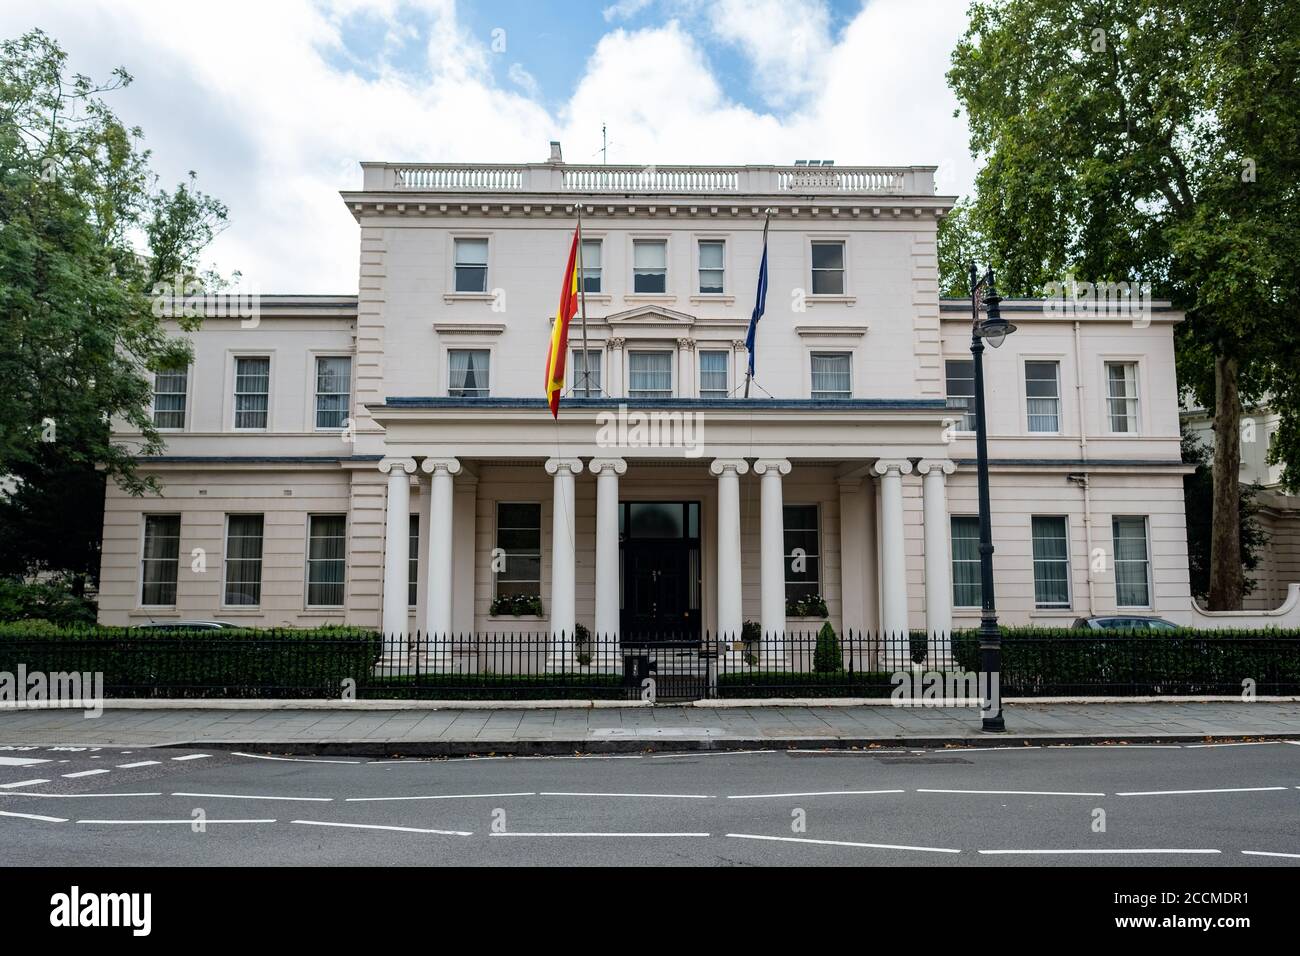 Londres- Ambassade d'Espagne sur la place Belgrave à Belgravia Banque D'Images